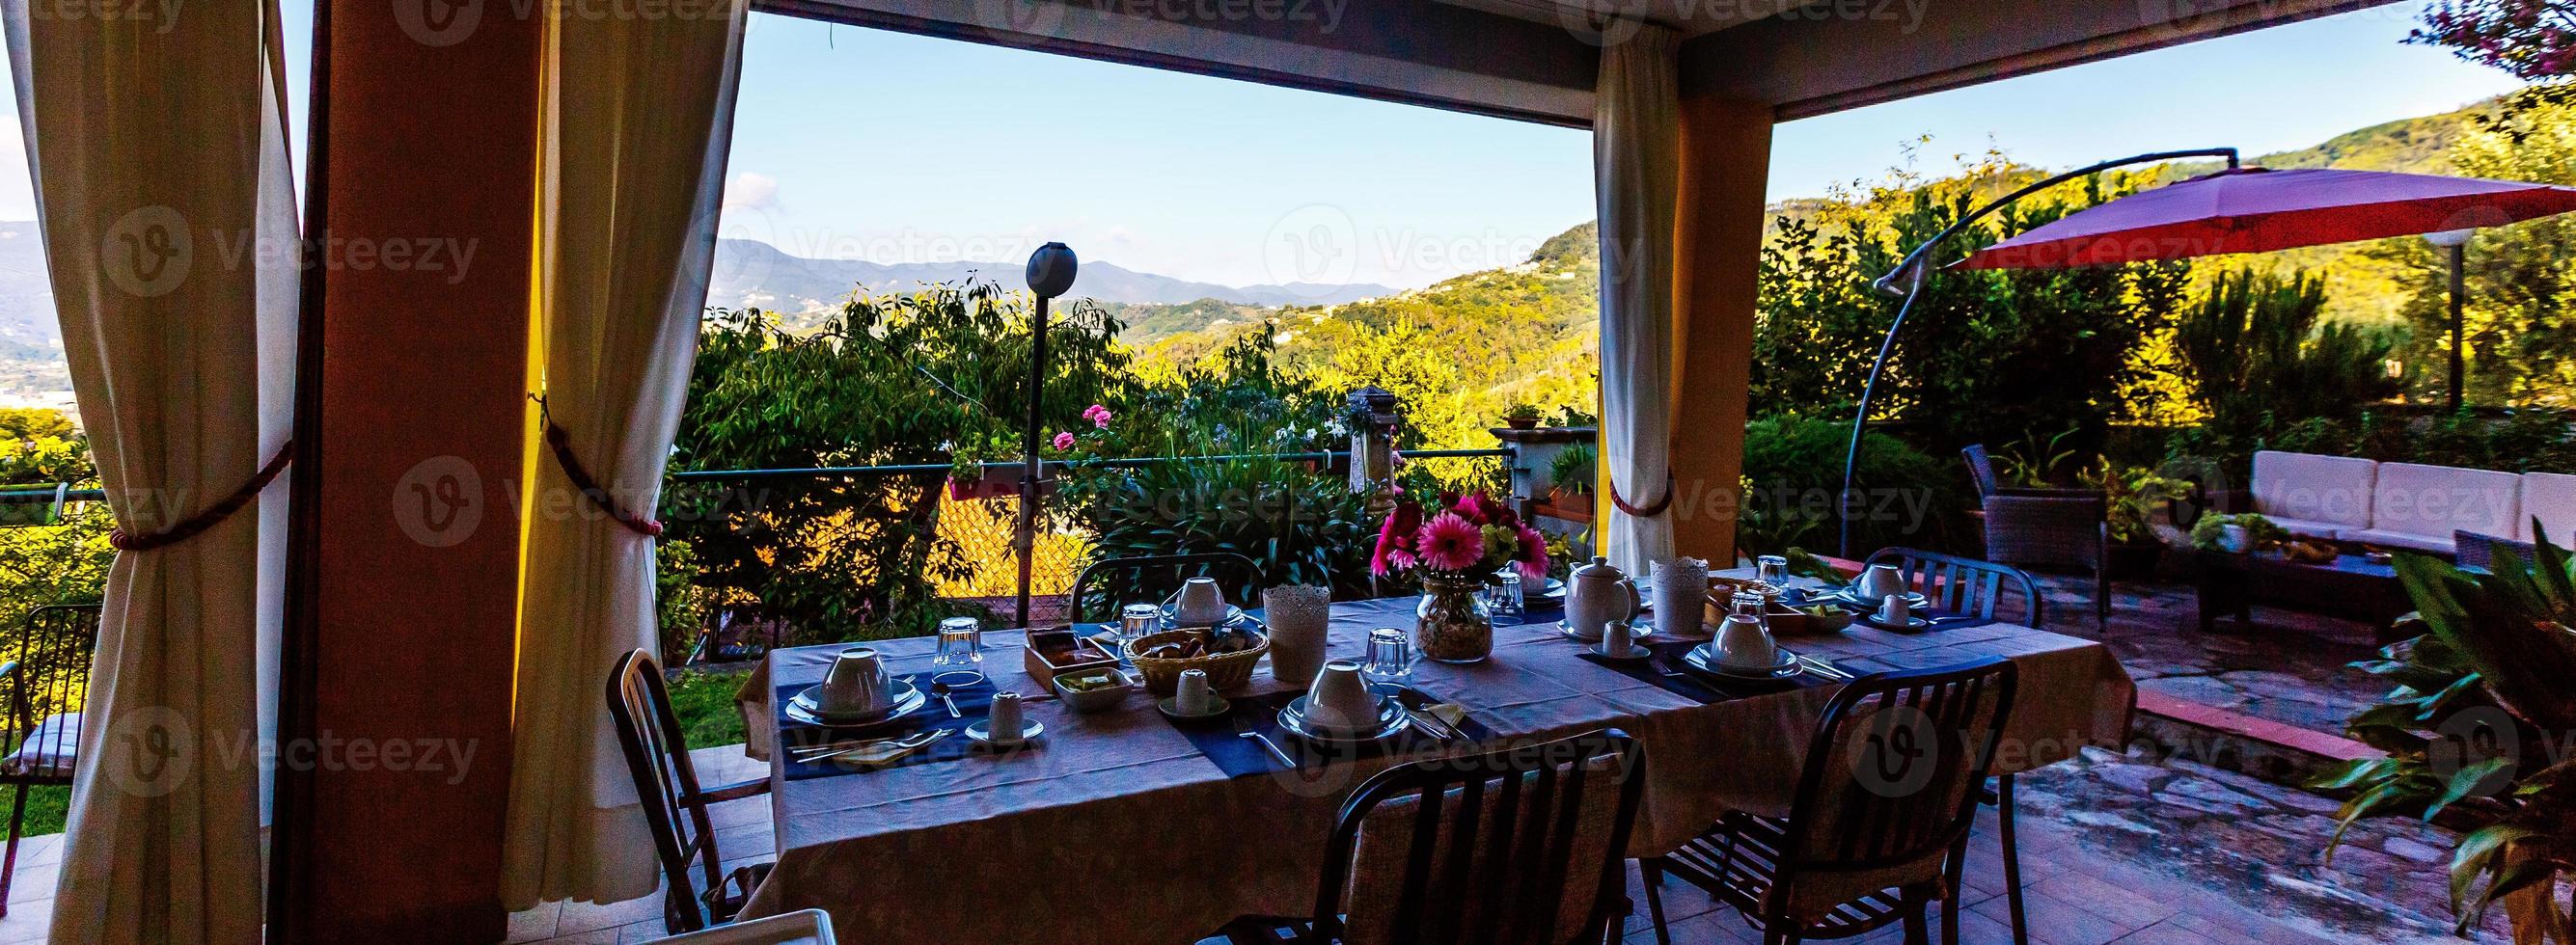 petit déjeuner en terrasse dans le village italien photo